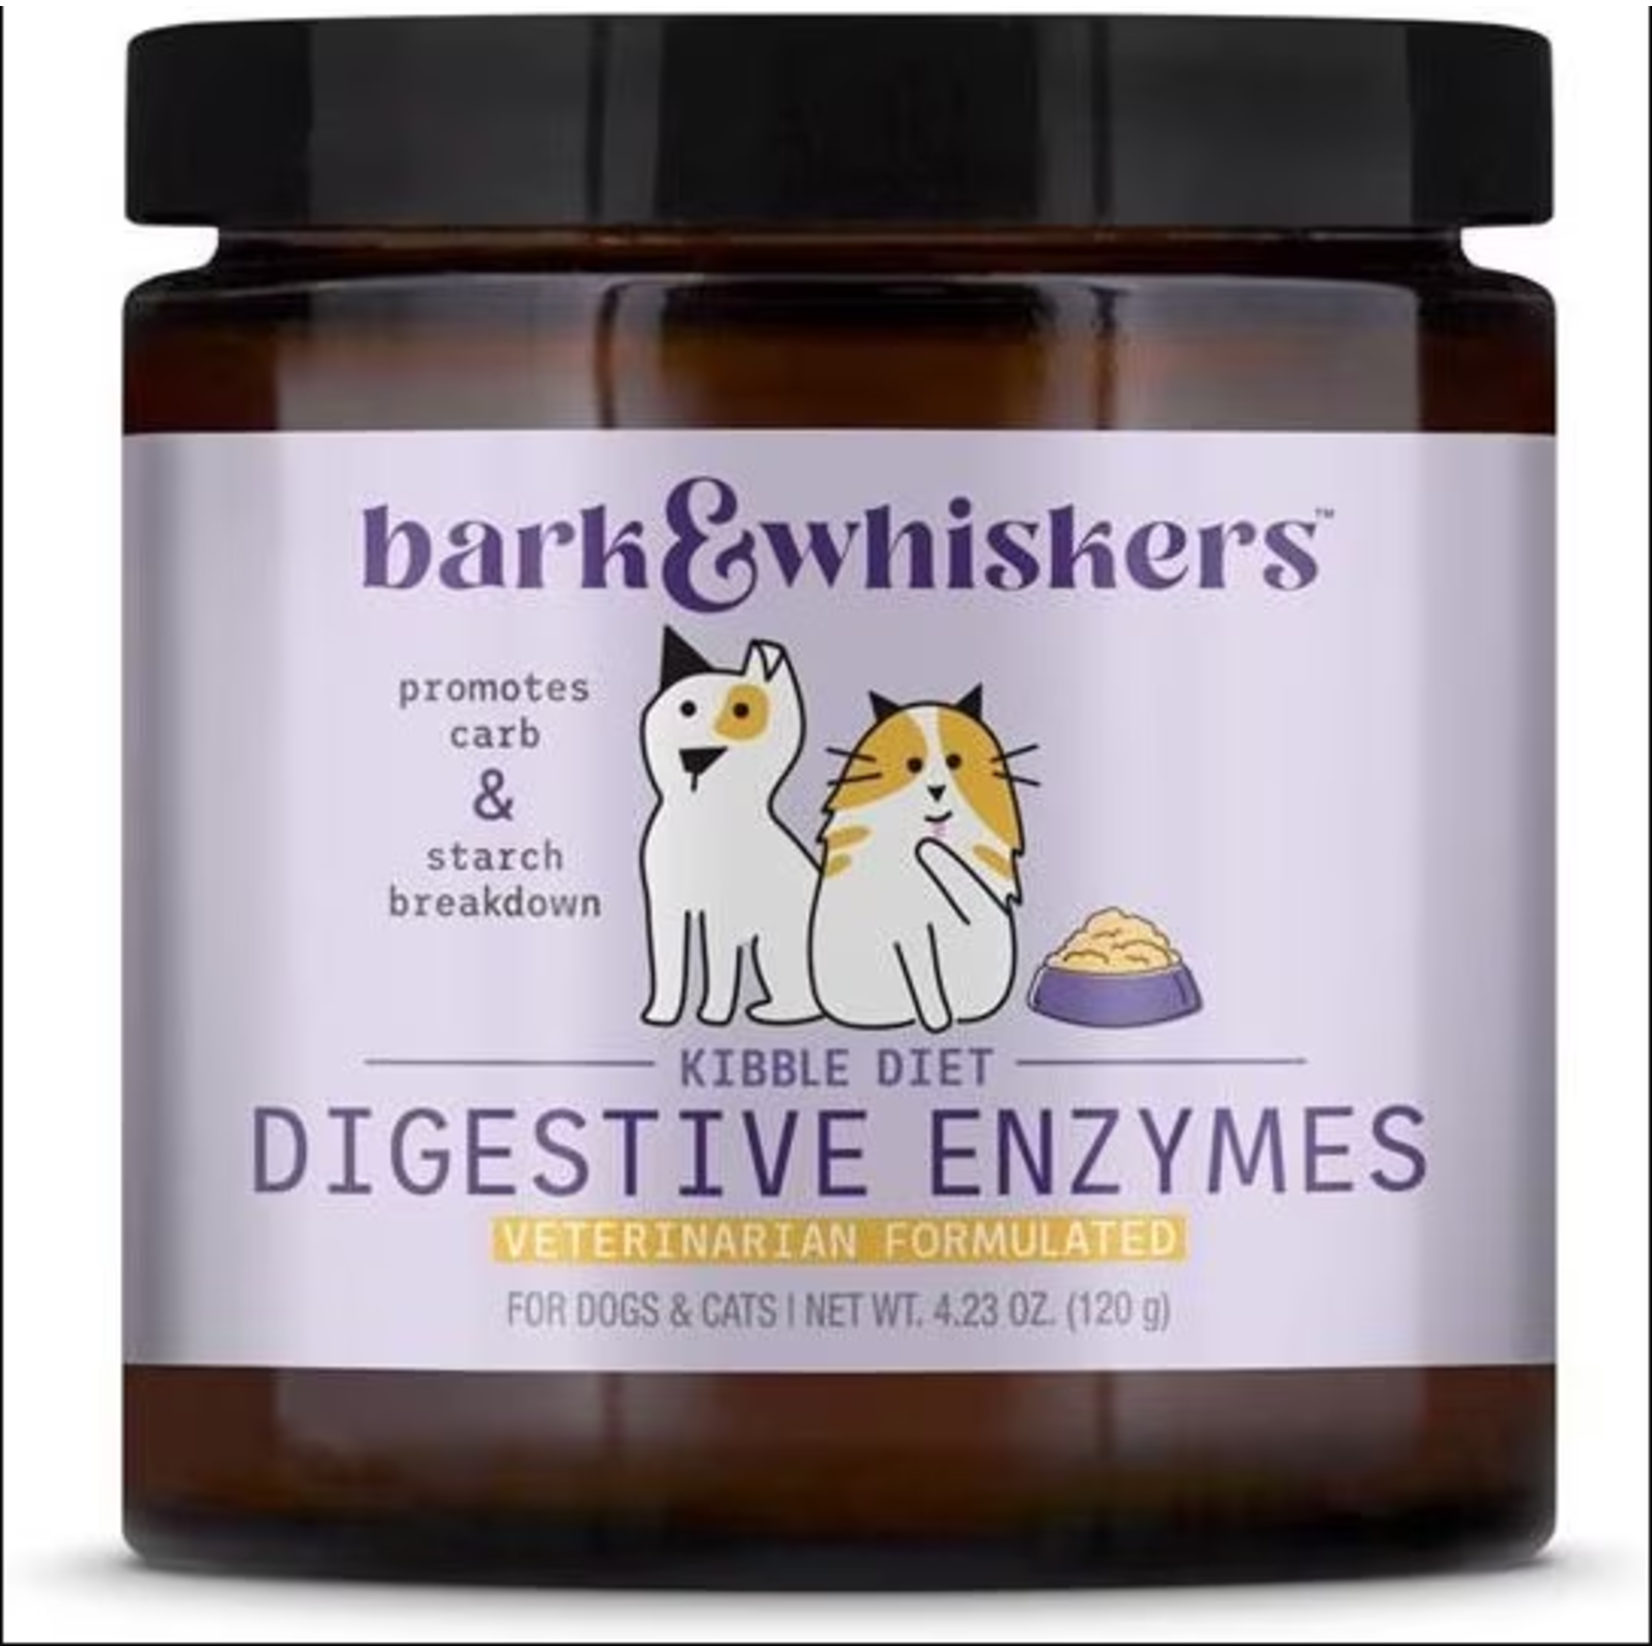 Mercola Bark & Whiskers™ Digestive Enzymes - Kibble Diet 4.23oz